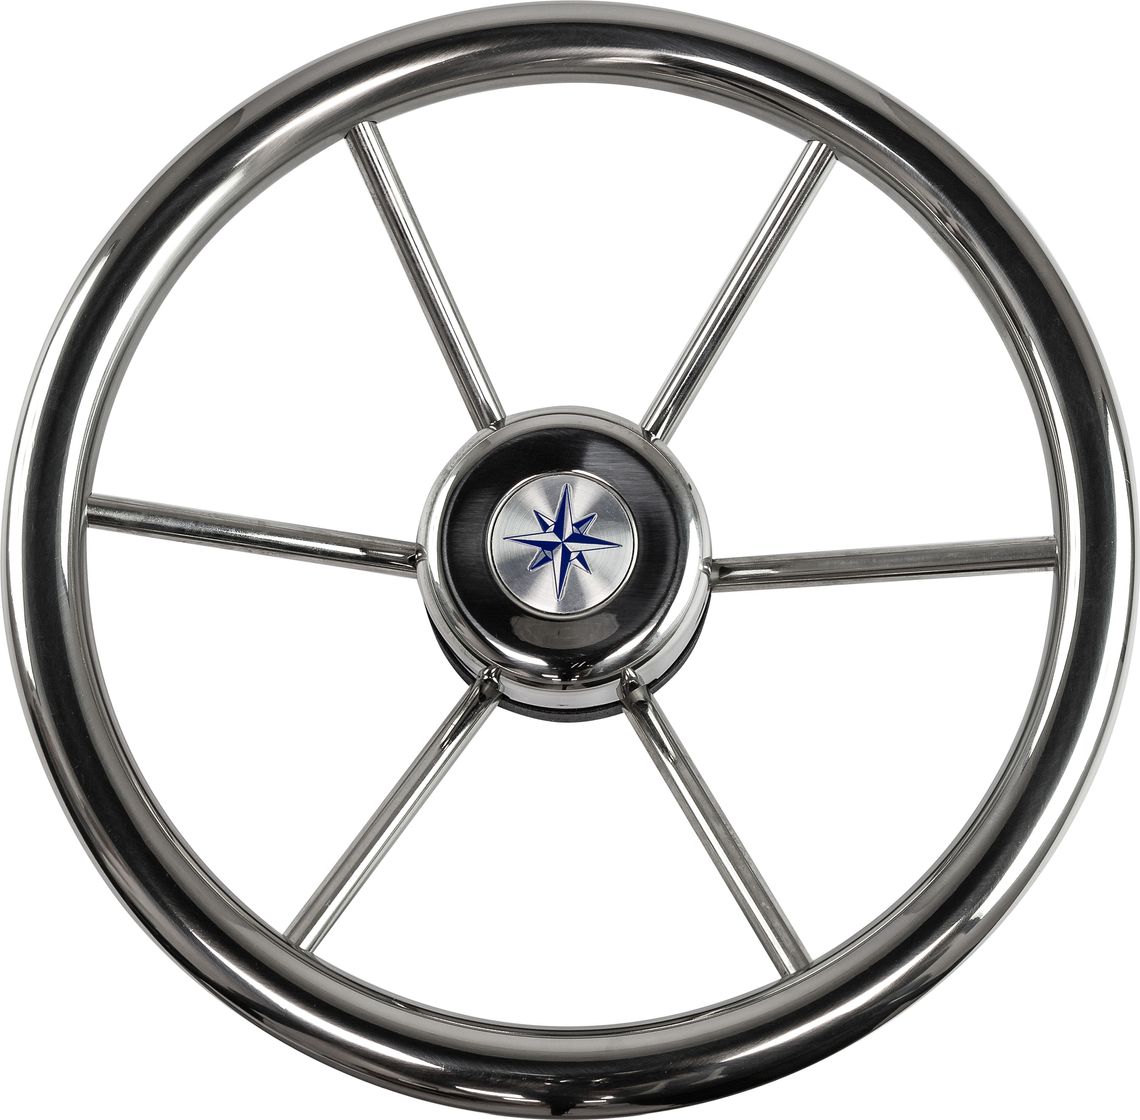 Рулевое колесо LEADER INOX нержавеющий обод серебряные спицы д. 320 мм VN7332-22 рулевое колесо leader tanegum обод серебряные спицы д 400 мм vn7400 01